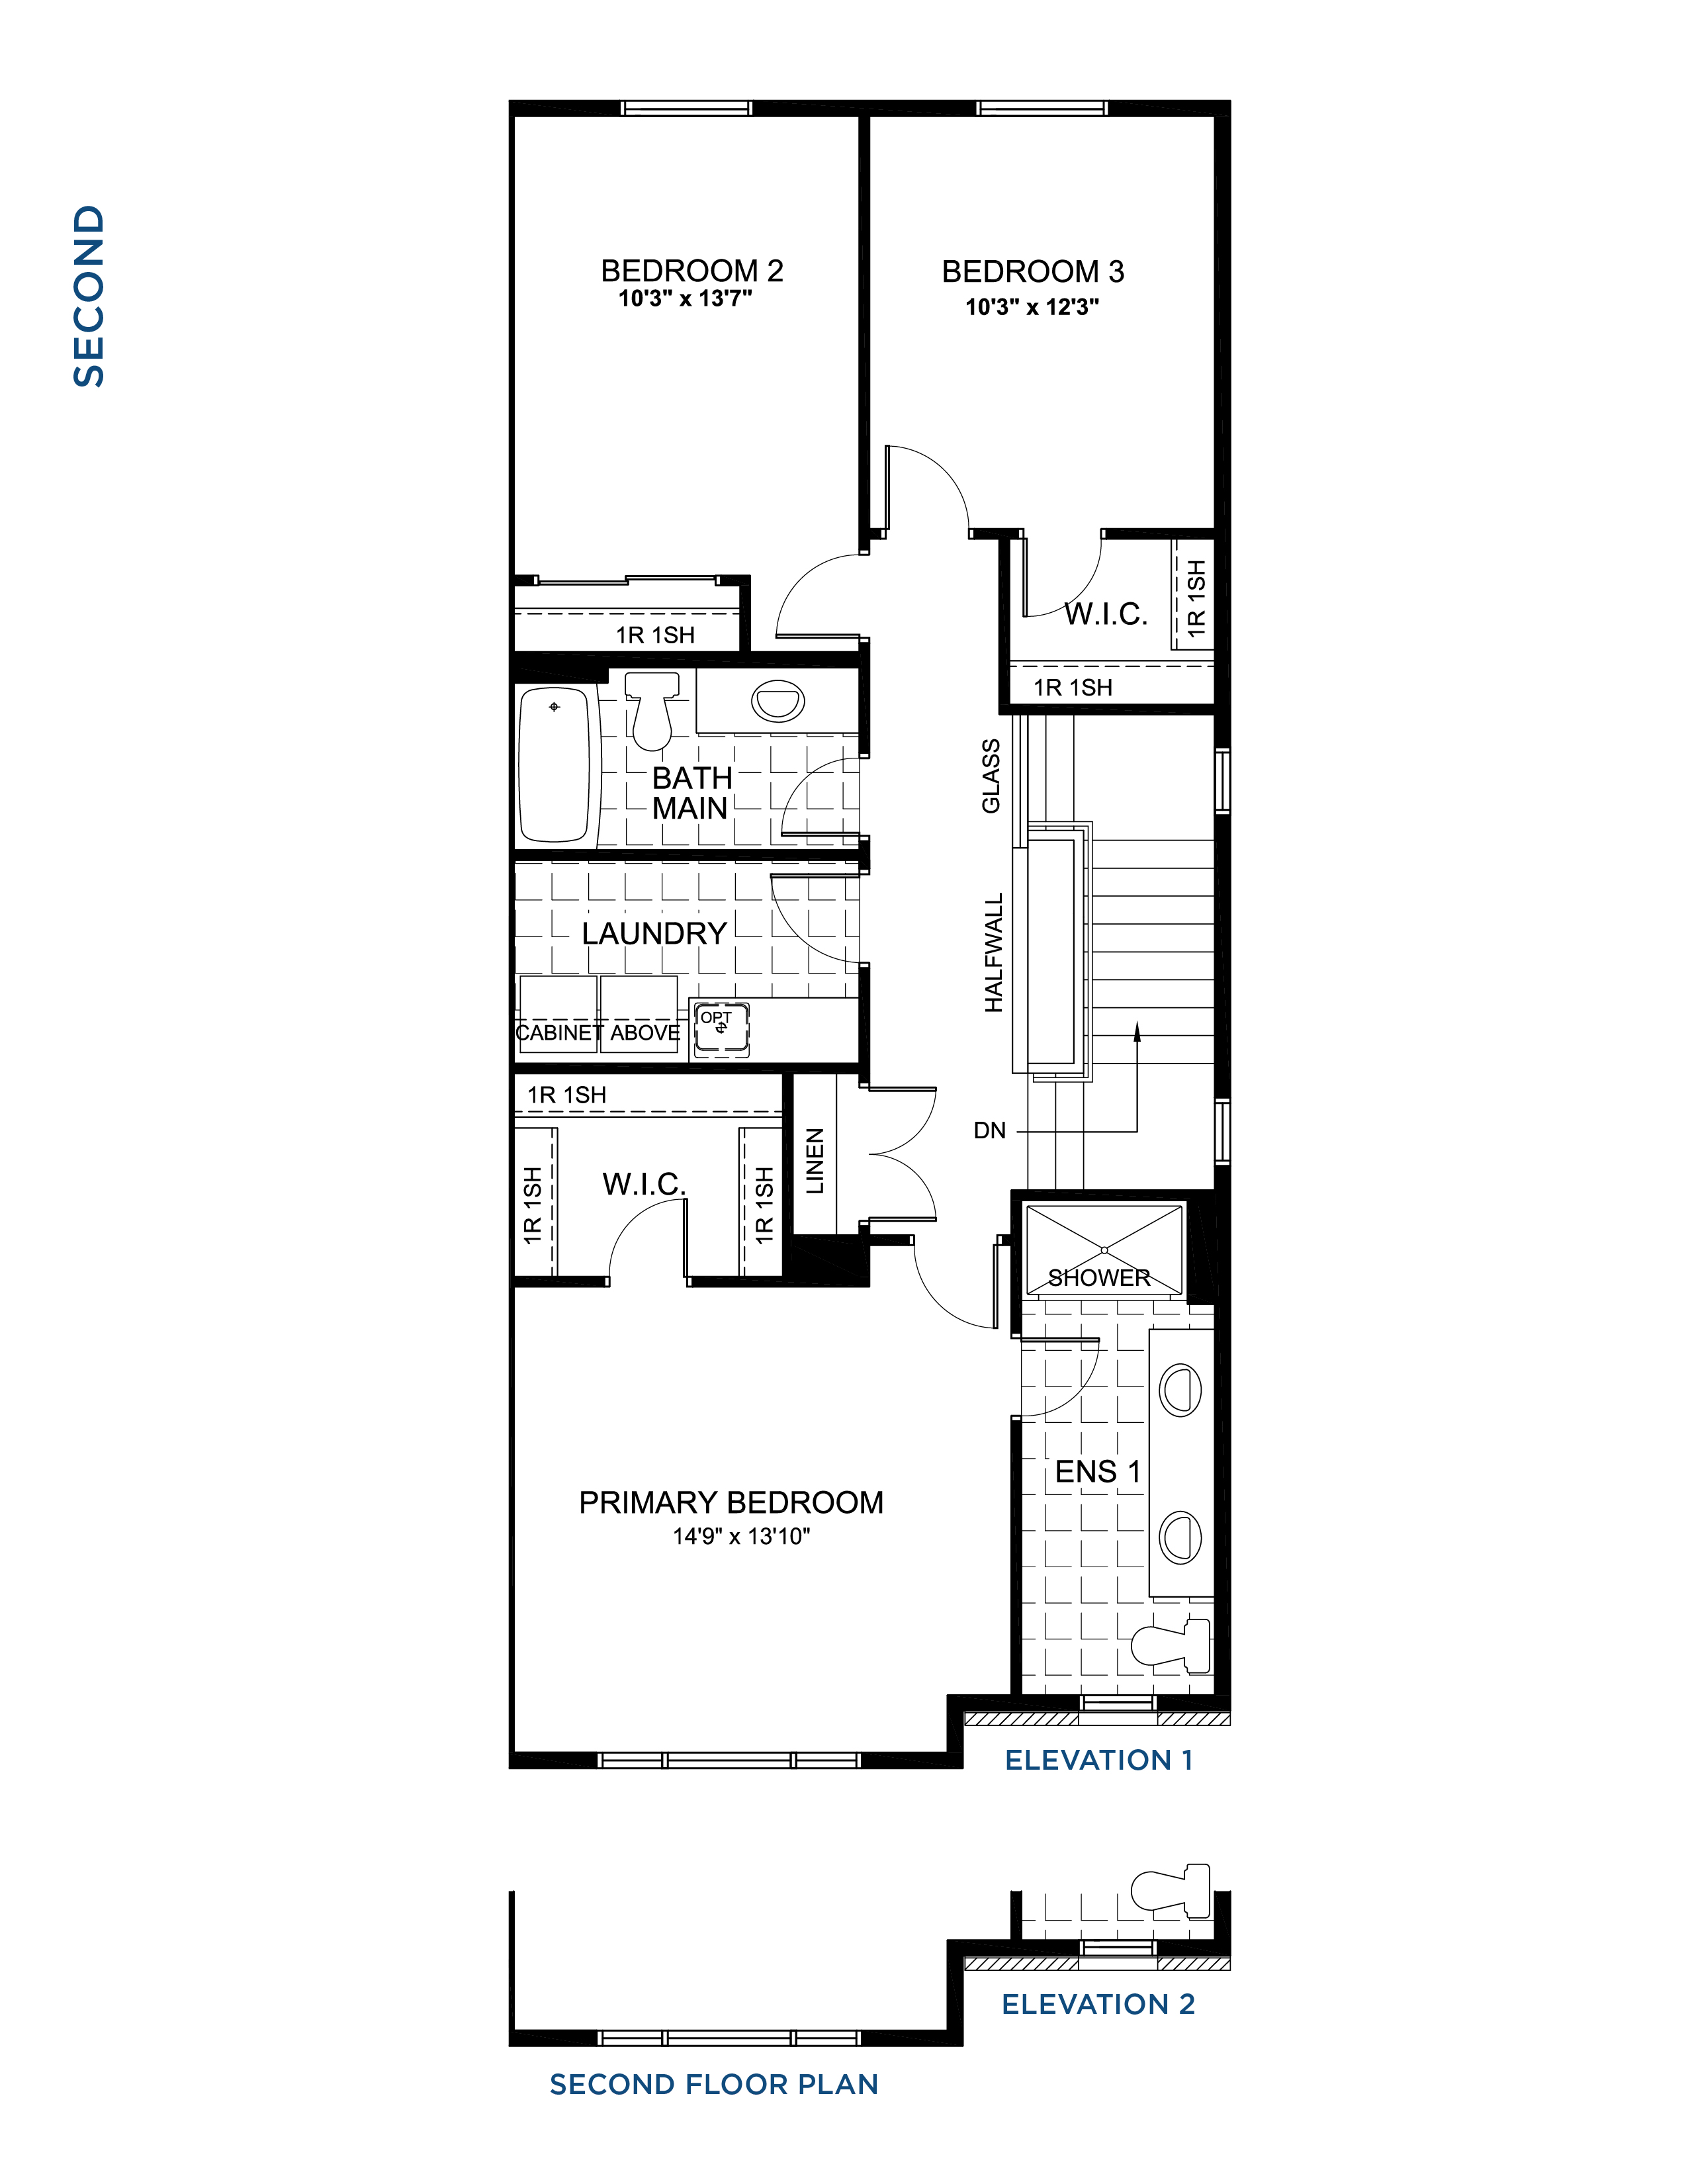 Floorplan Second Level - Pothos